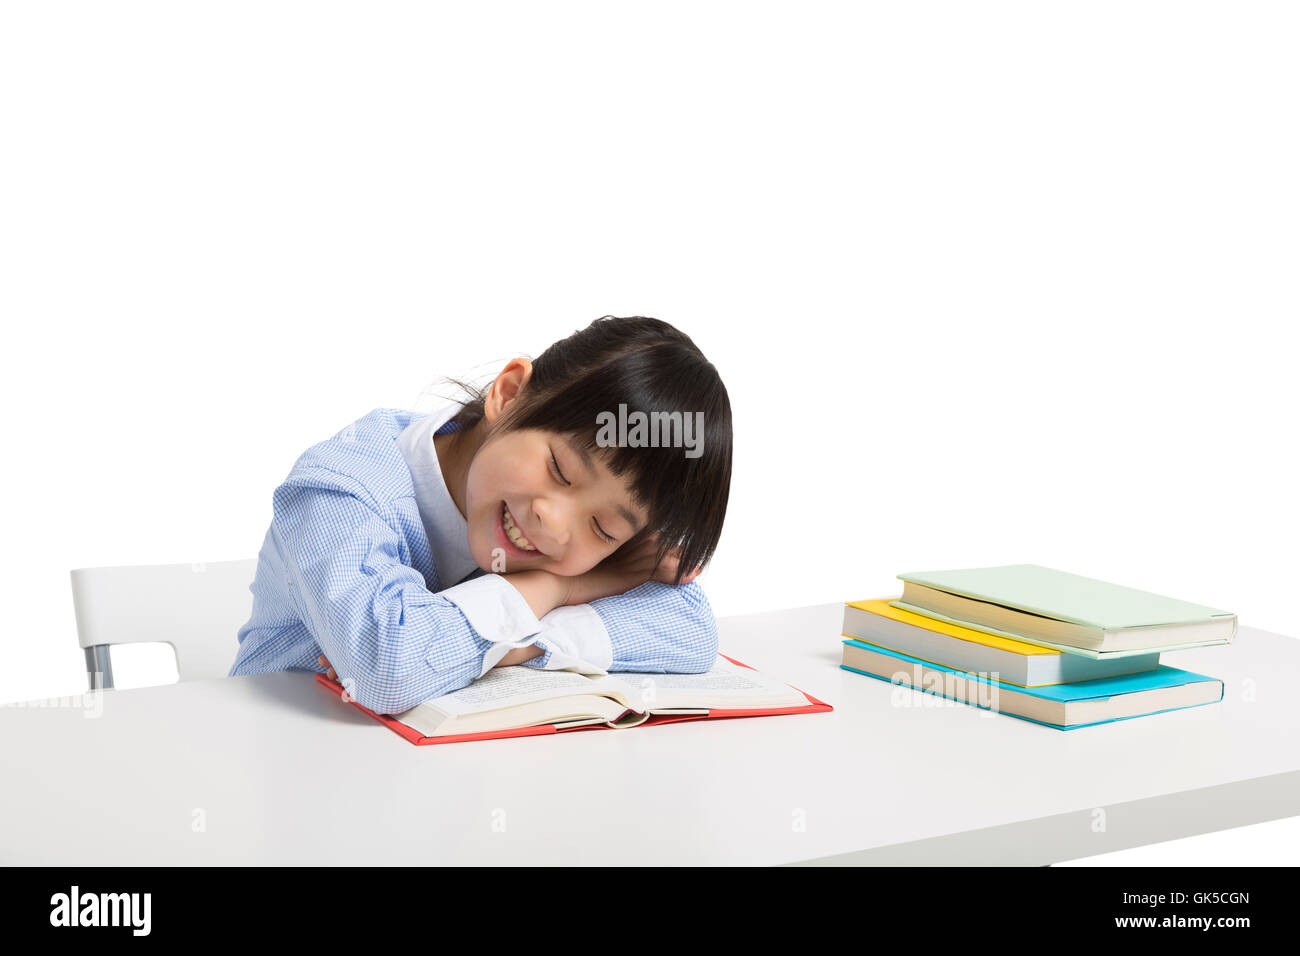 Little girl lying on the desk to sleep Stock Photo